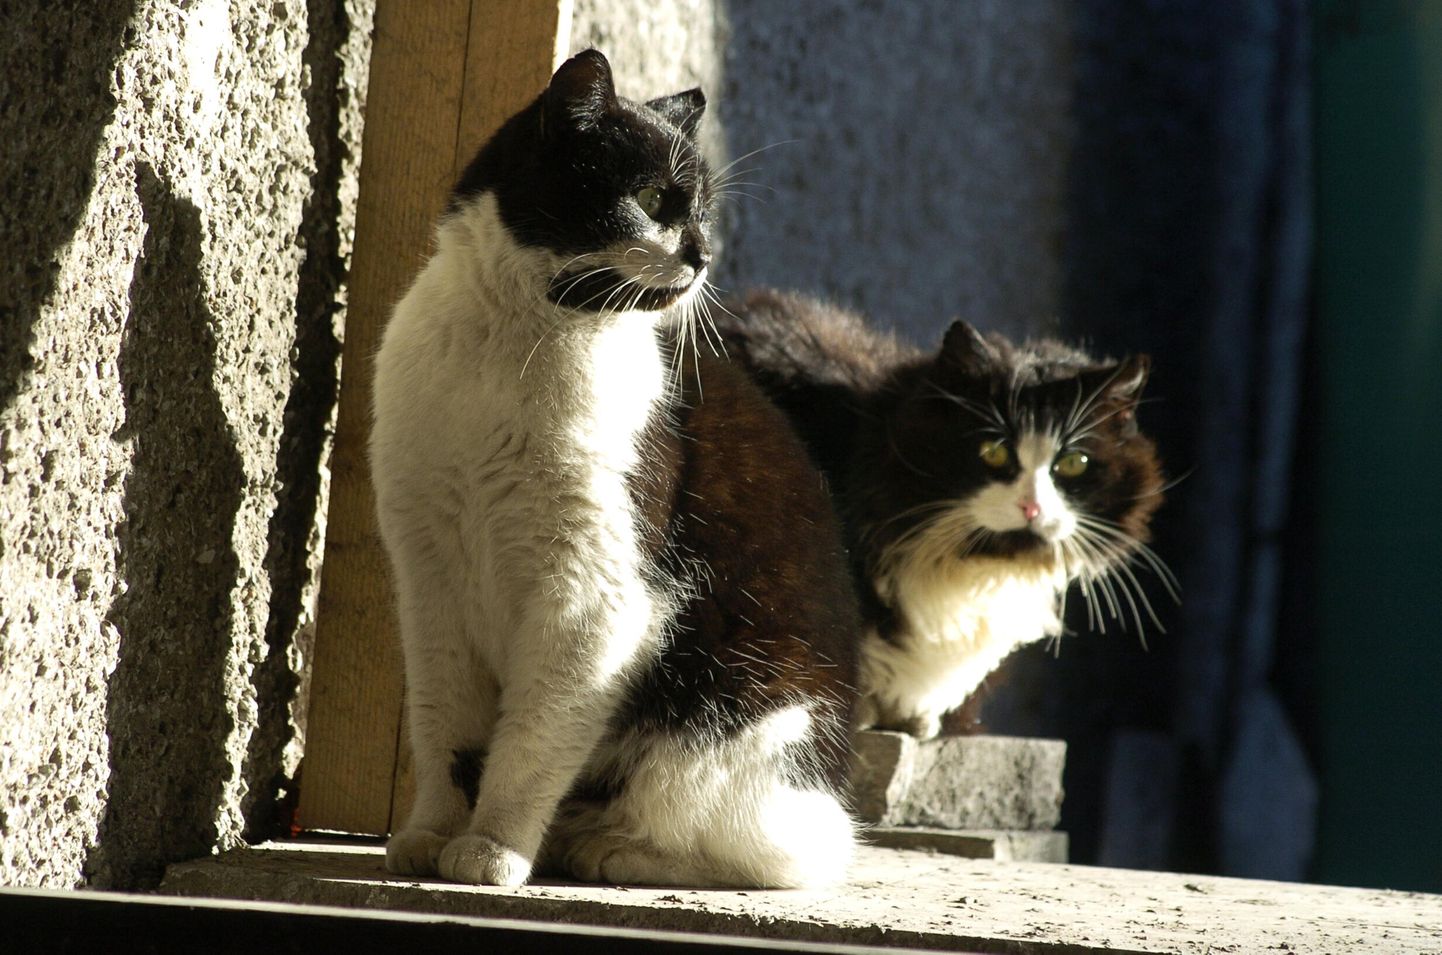 Omapäi uitama lastud kassid ajavad lihtsalt oma tähtsaid kassiasju – teadmata, et need ülejäänud linnaelanikes pahameelt tekitavad.